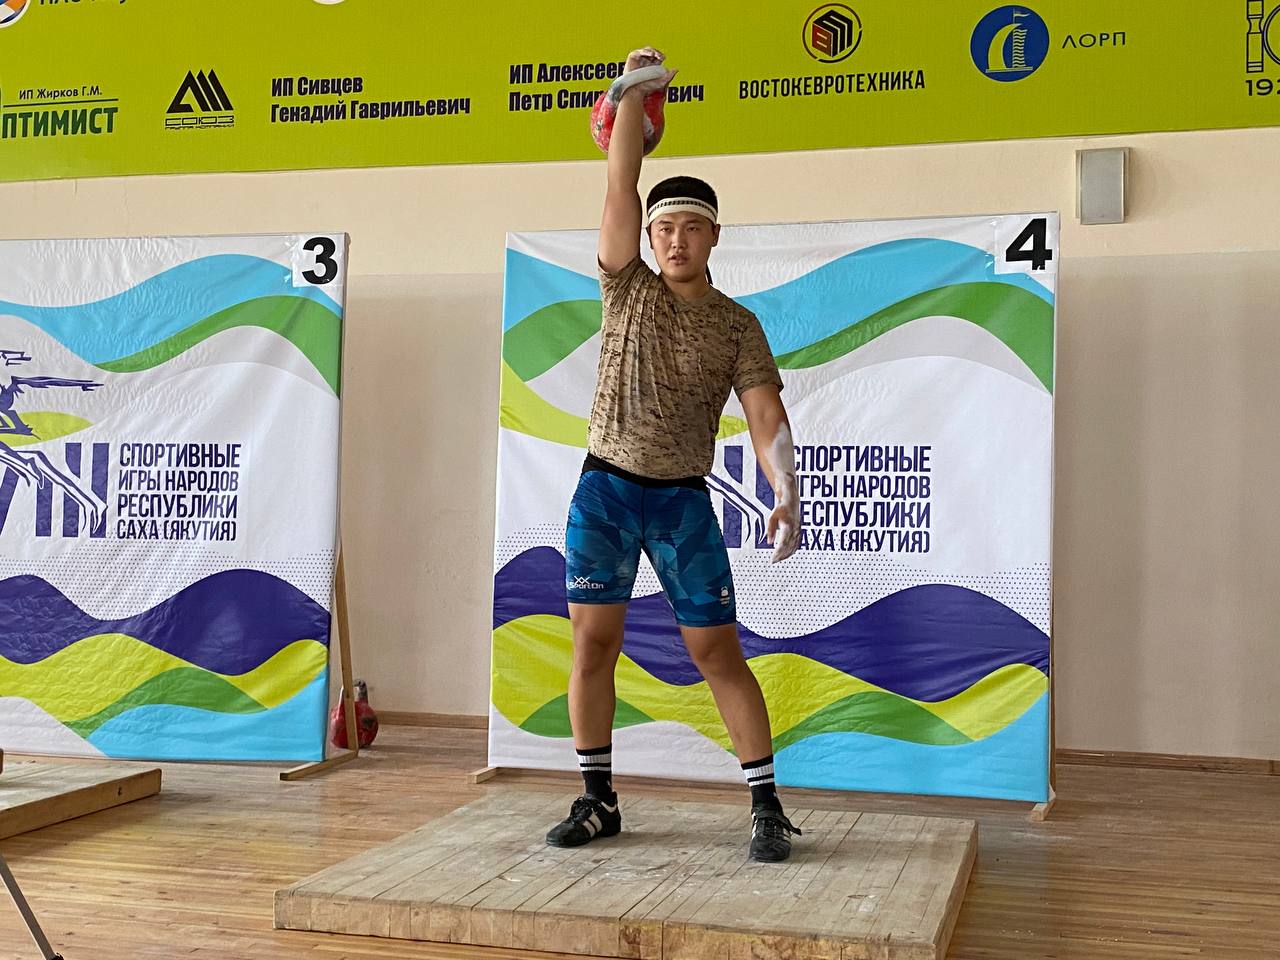 Гиревики Усть-Алданского района стали победителями VIII Спортивных игр народов Якутии